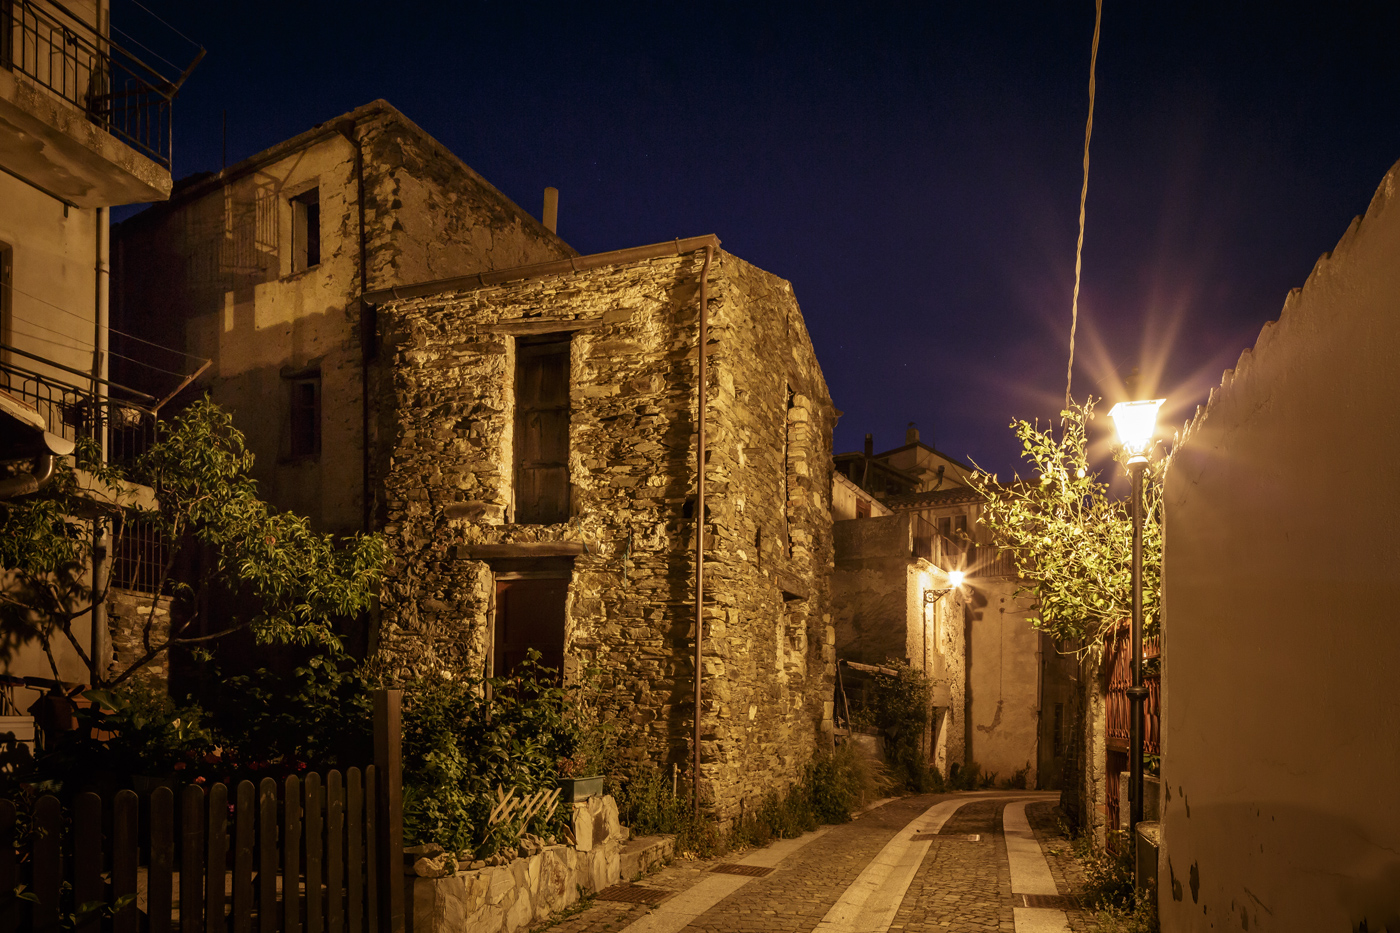 B&B Gennarcu. Scorci di Ussassai di notte, Sardegna